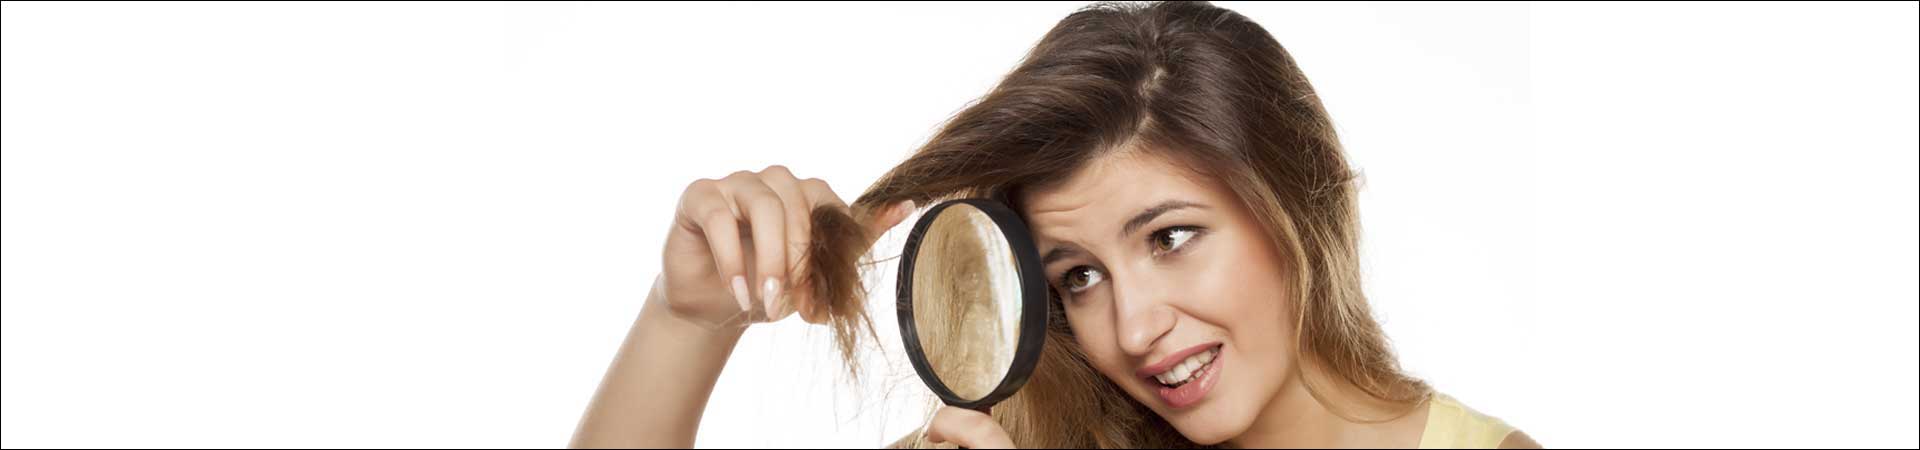 Weiblicher Haarausfall